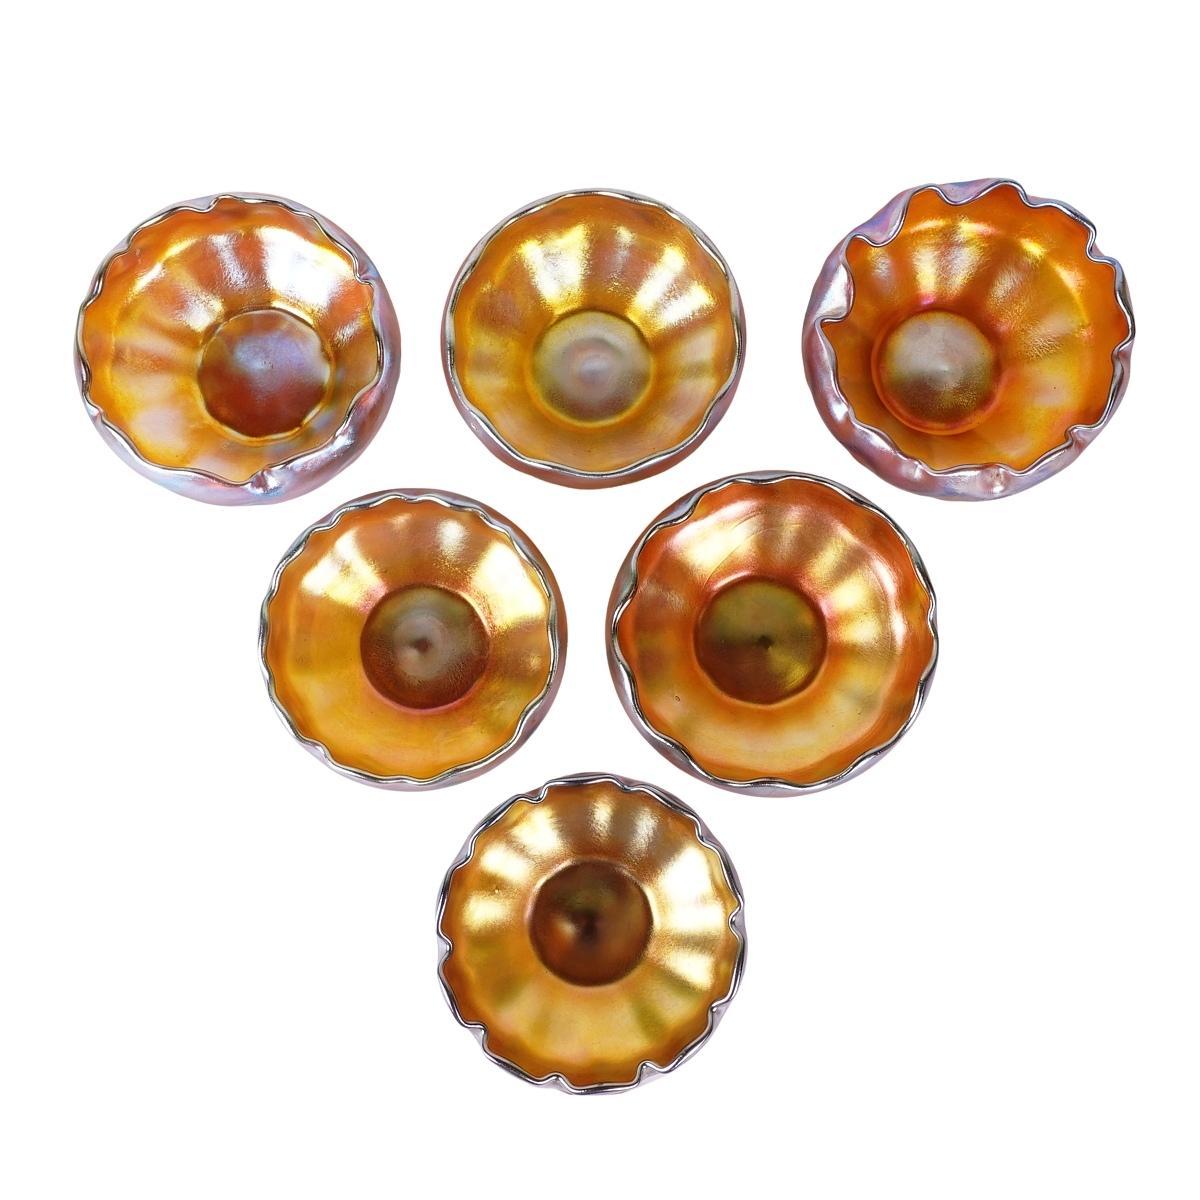 Bieten Sie dieses erstaunliche Set von sechs Louis Comfort Tiffany Gold Favrile irisierenden Kunstglas Nuss oder Beeren Schalen. Diese 